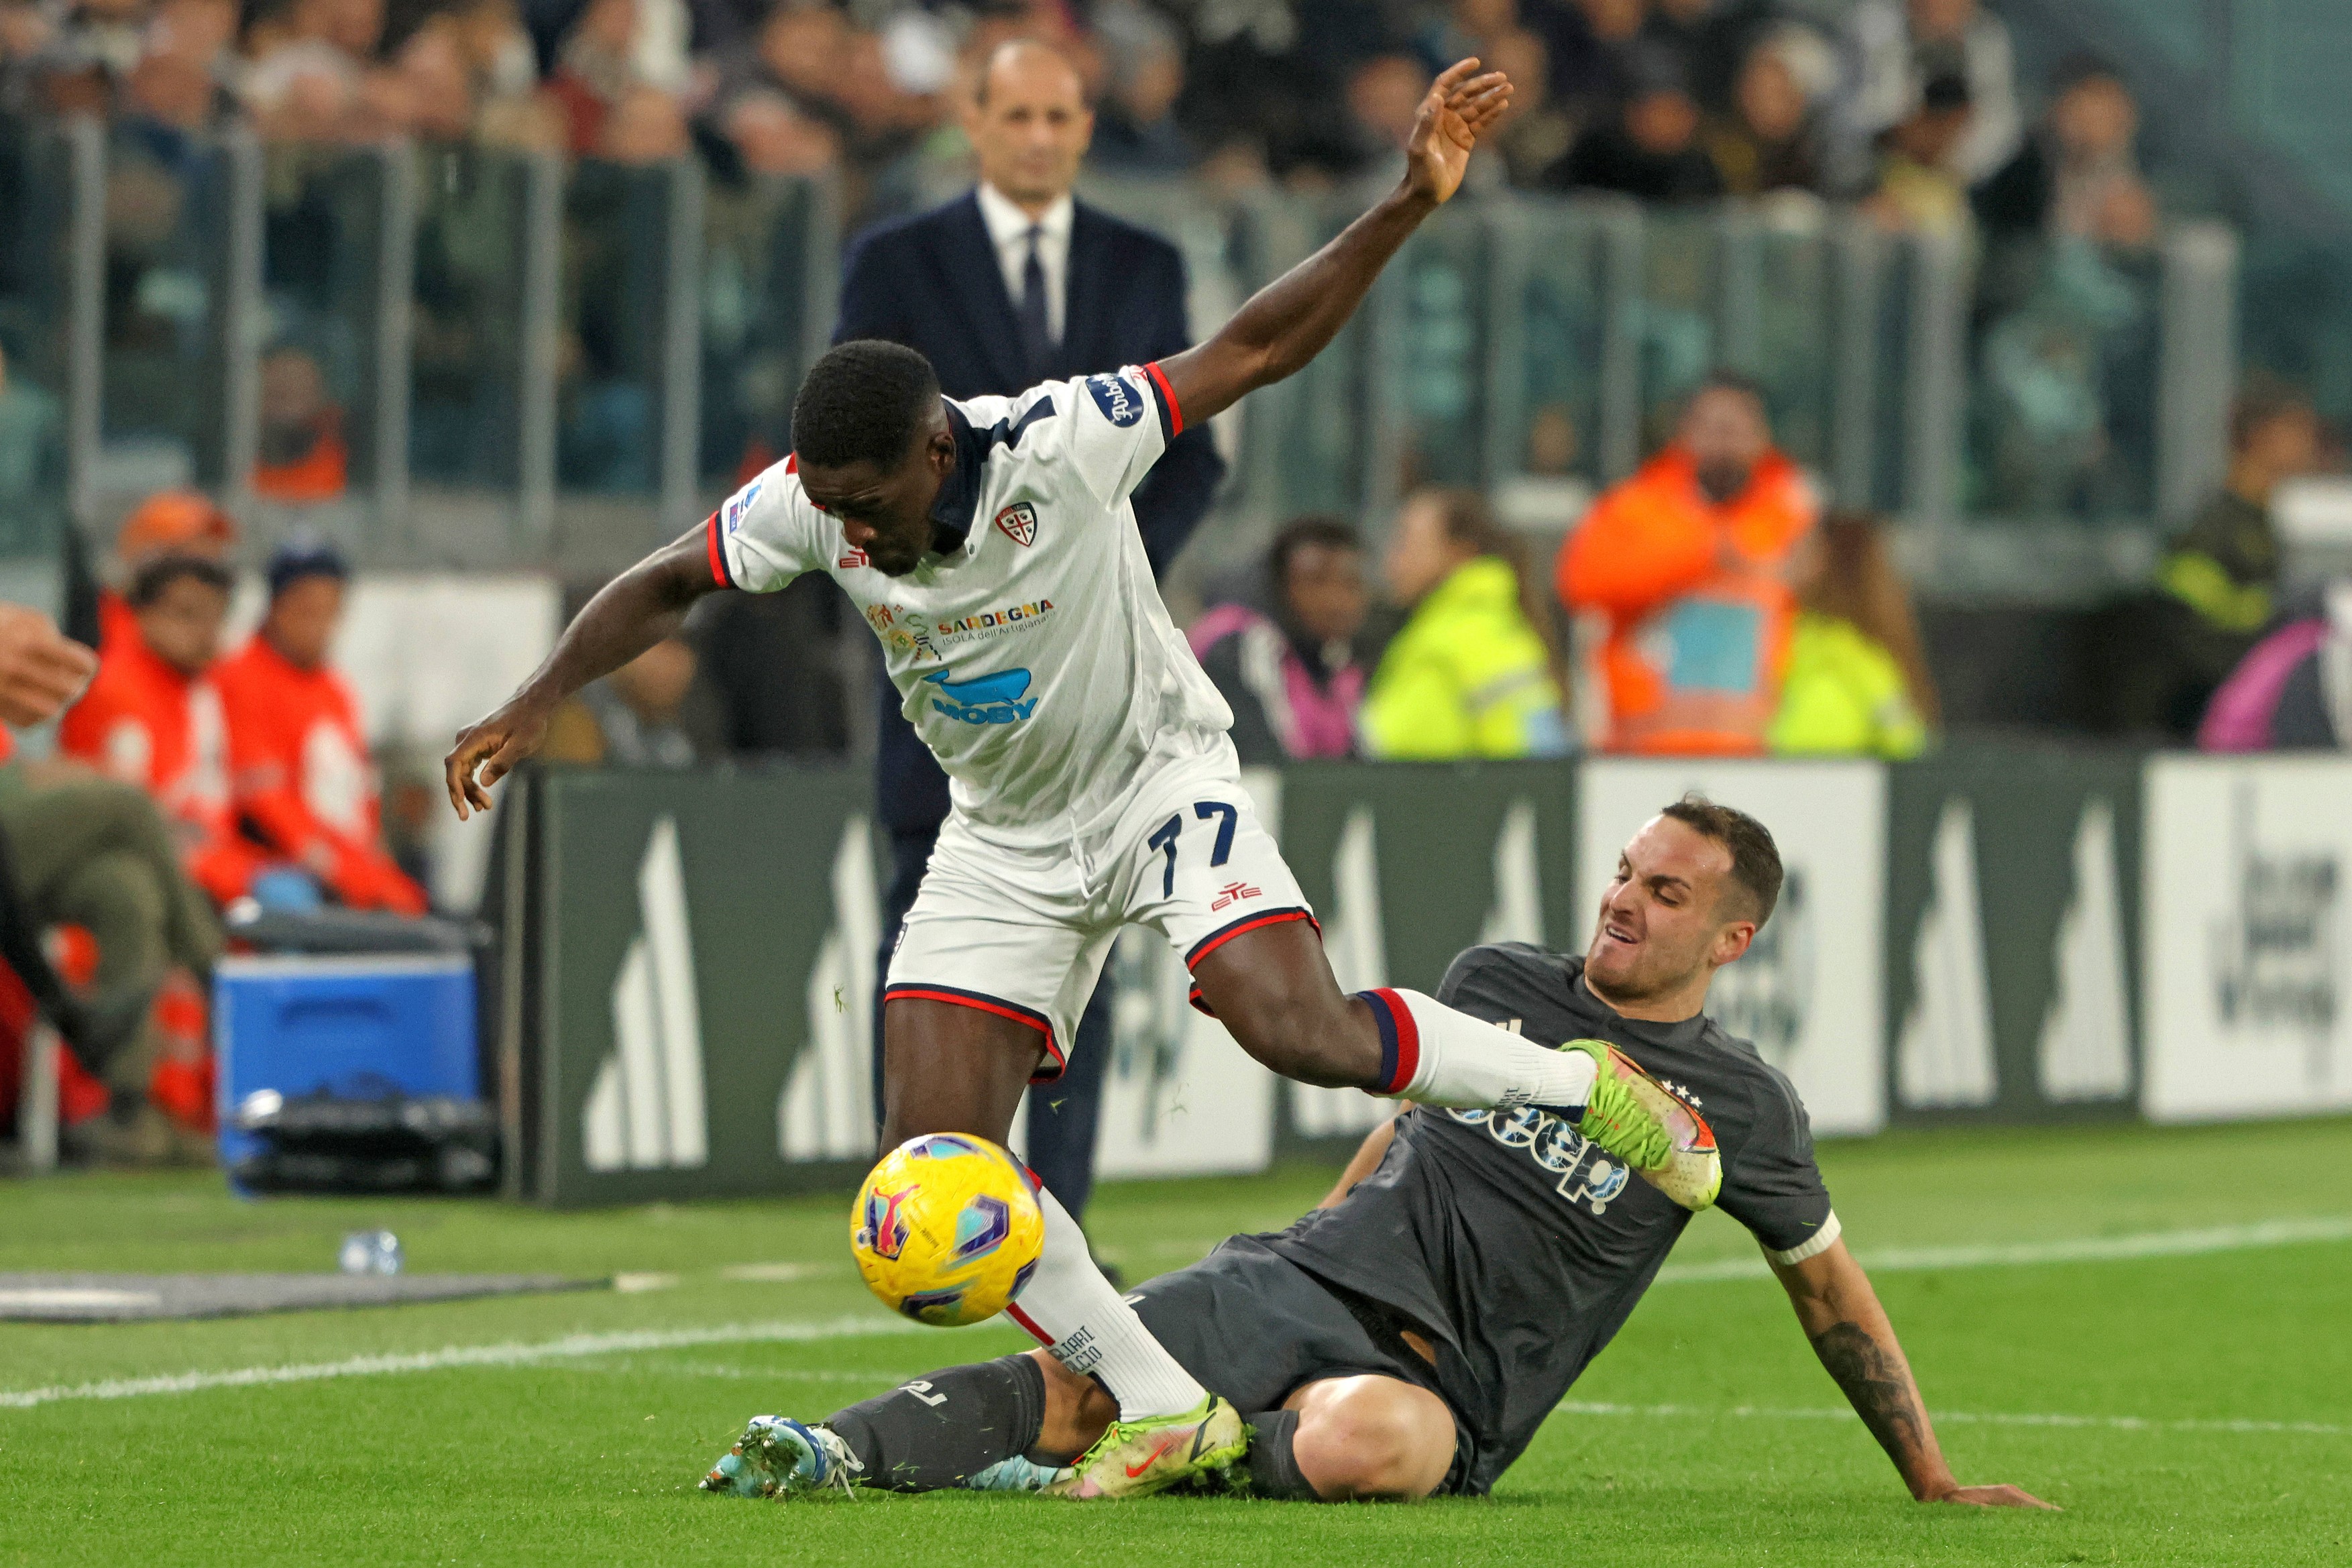 Cagliari - Juventus 2-1, ACUM, pe Digi Sport 2. Vlahovic reduce din diferență